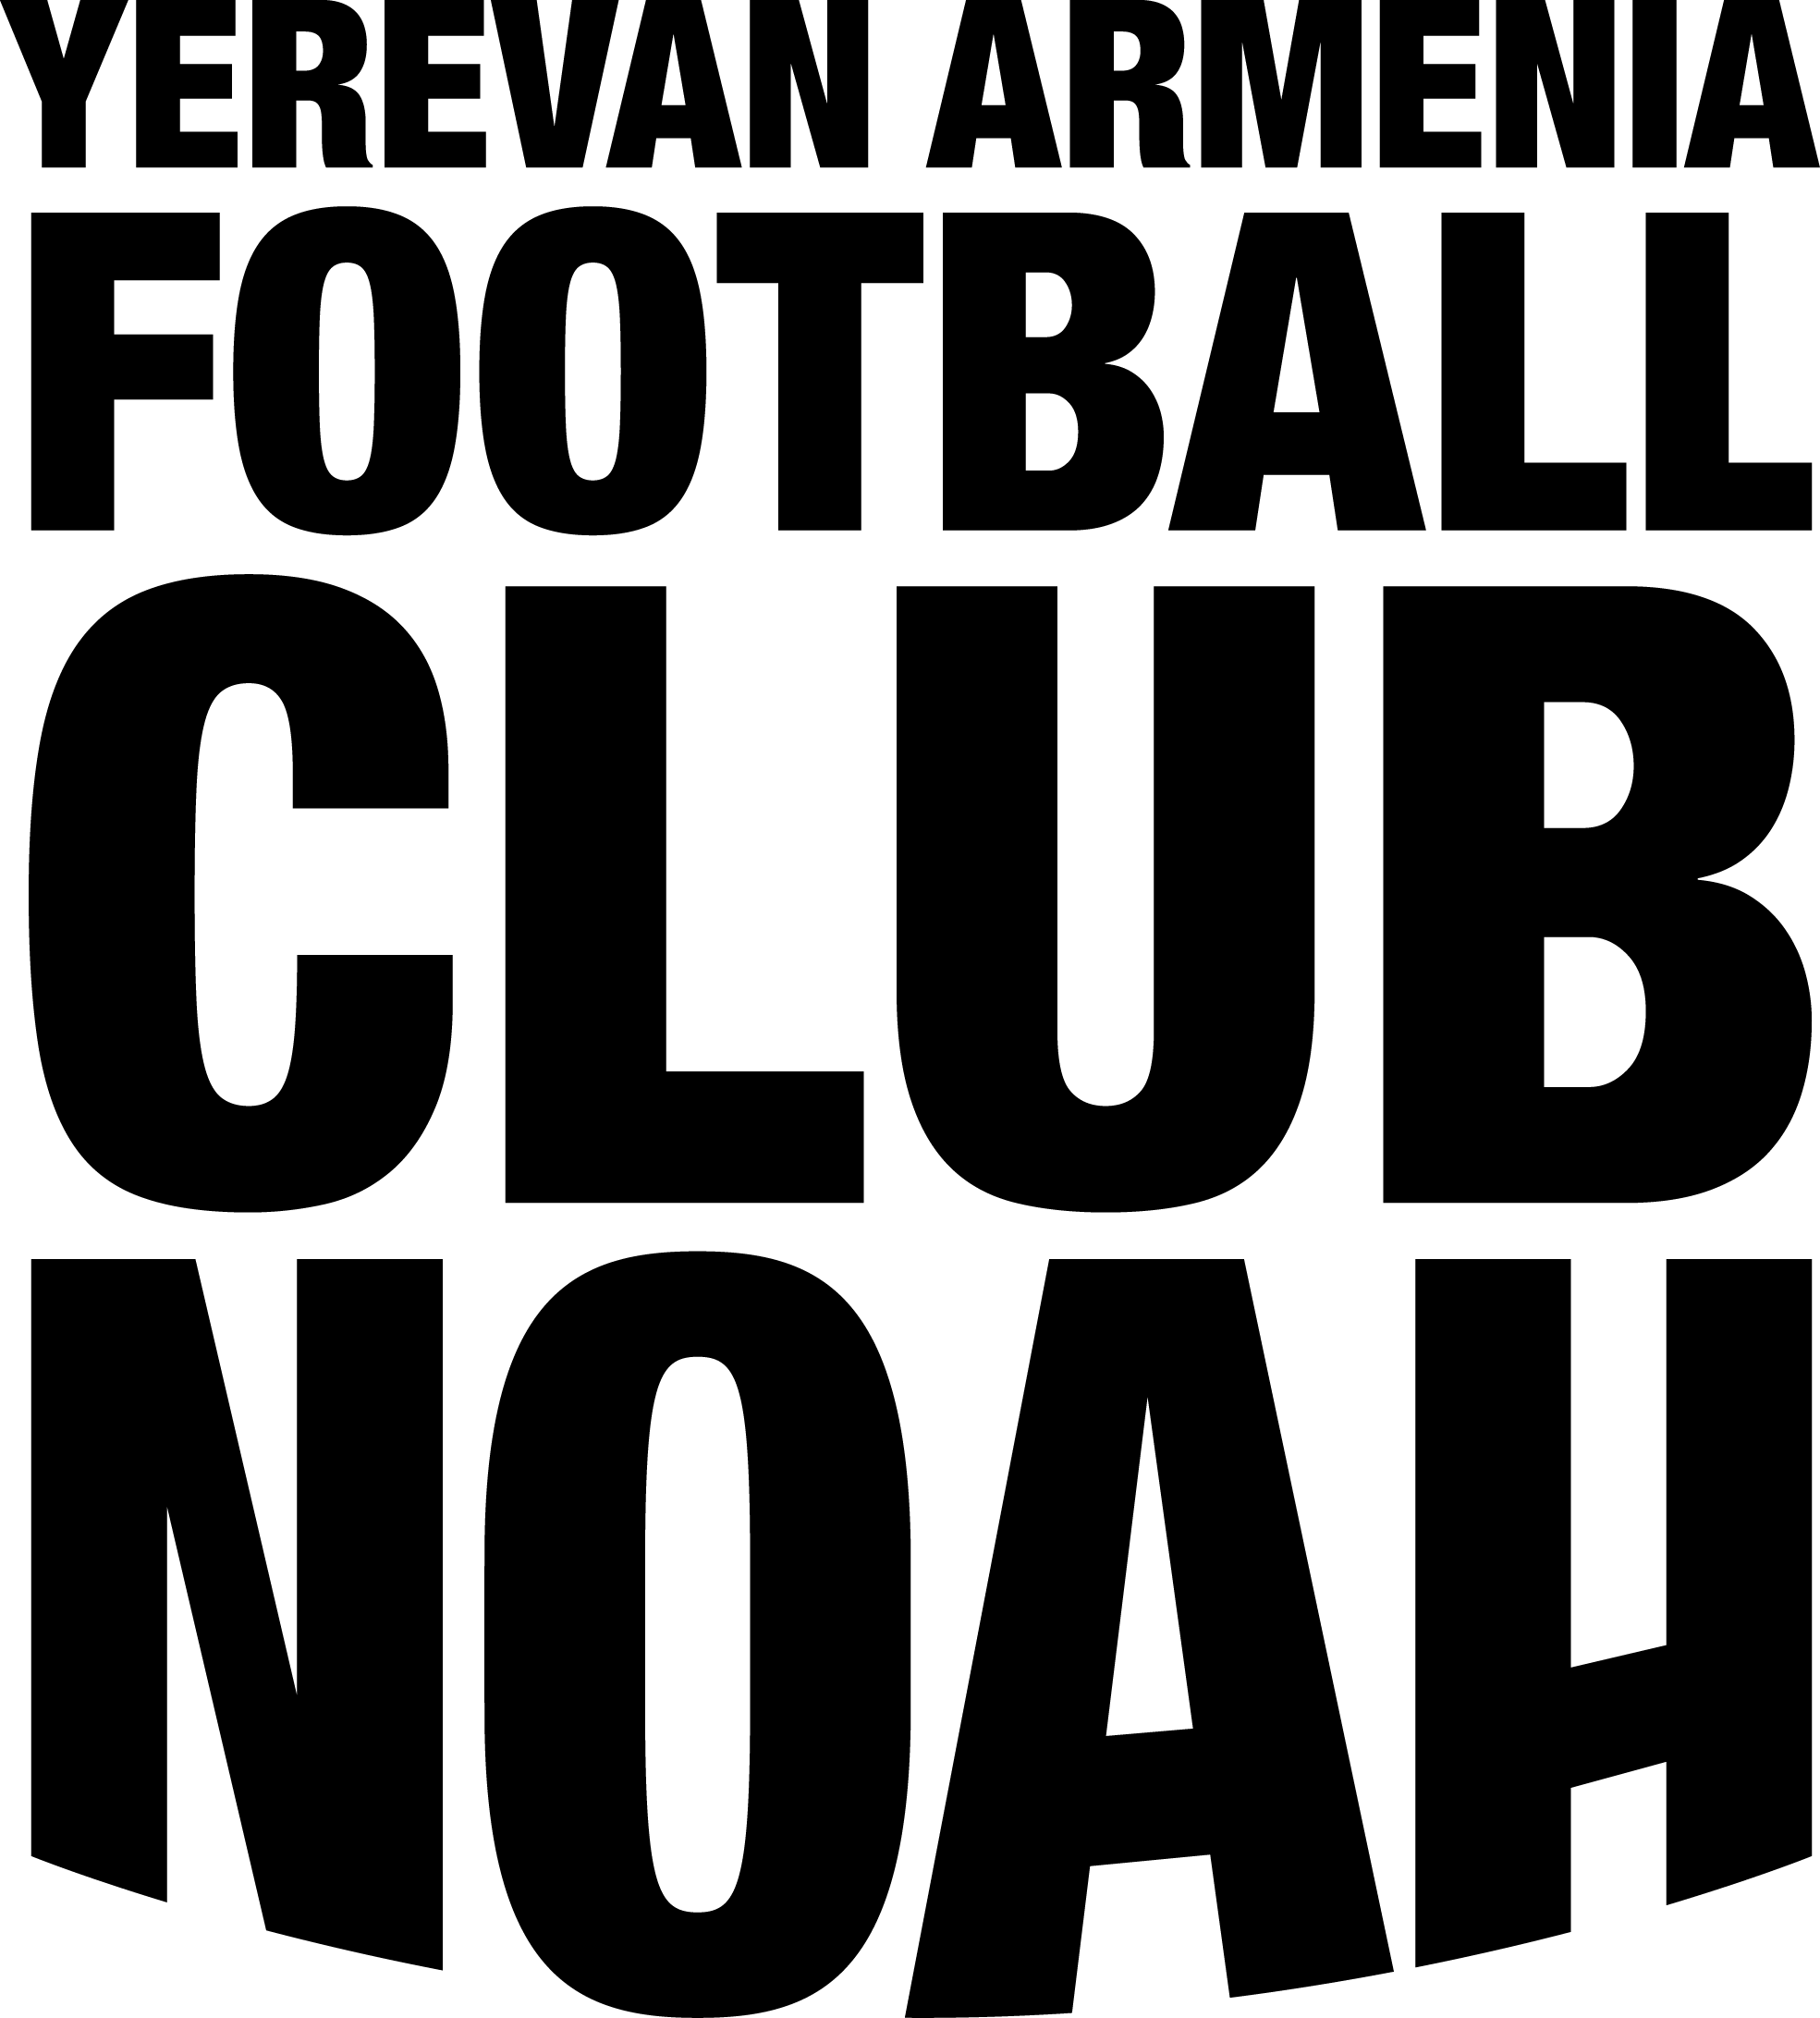 Pyunik - Ararat-Armenia 0:3